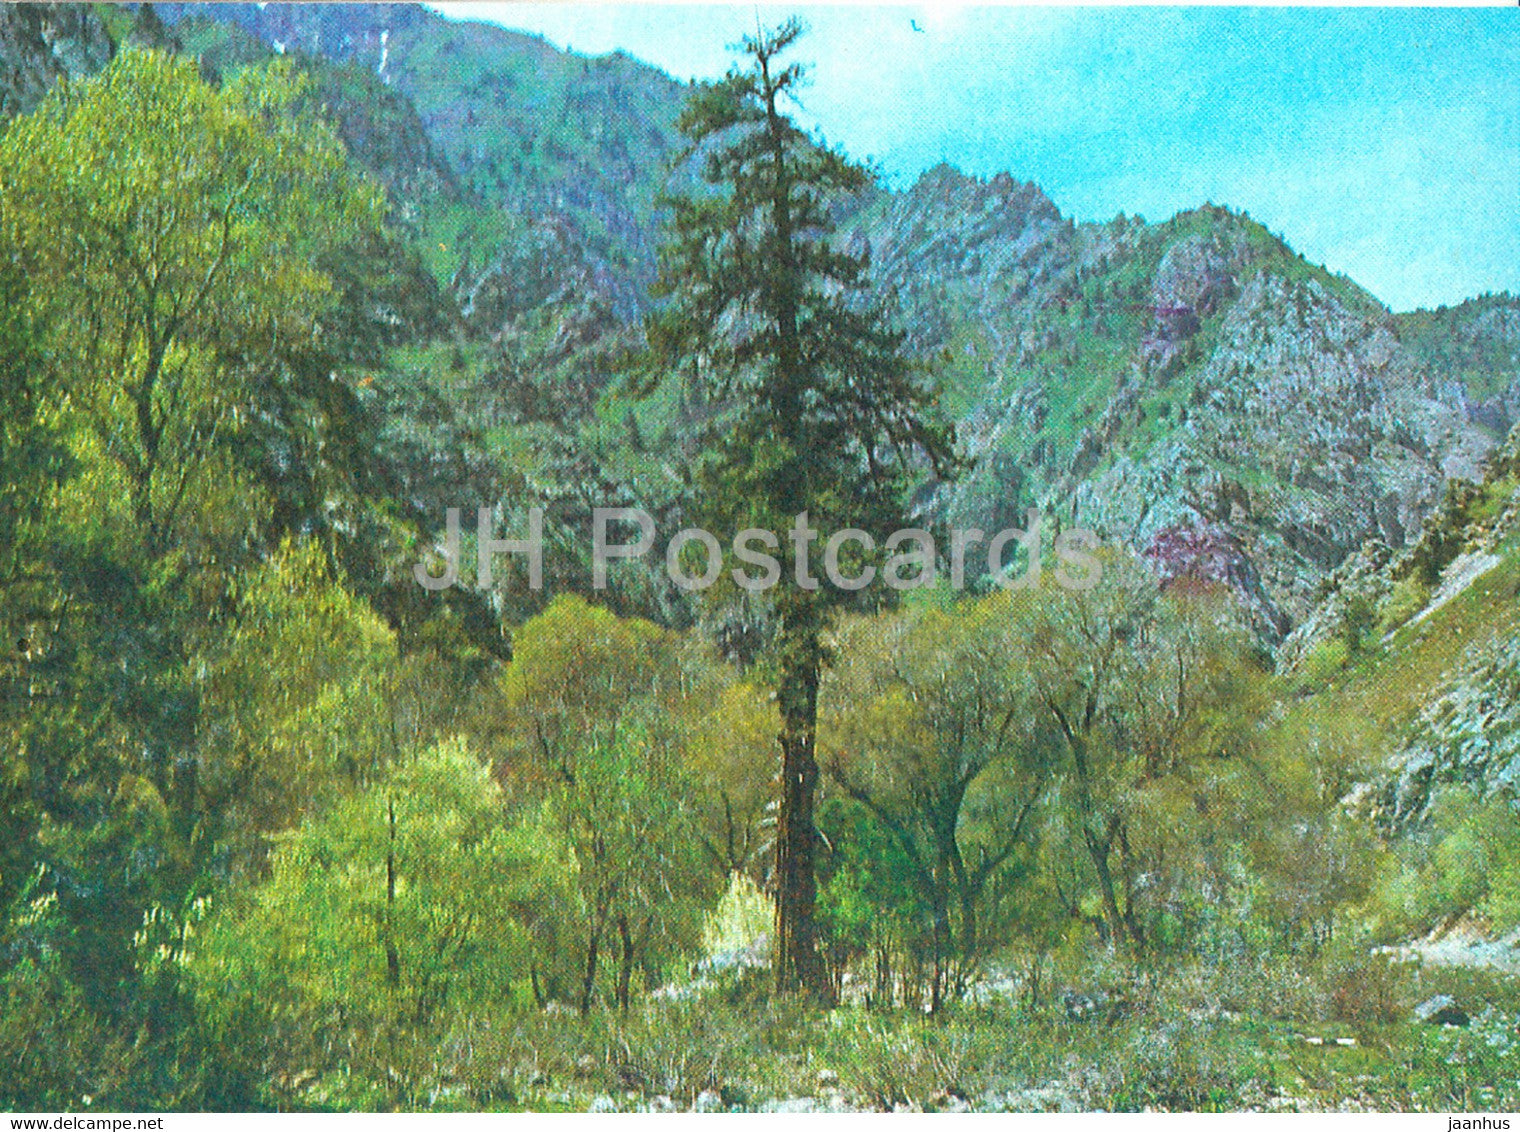 Autumn motifs - Nature Trails - 1981 - Uzbekistan USSR - unused - JH Postcards